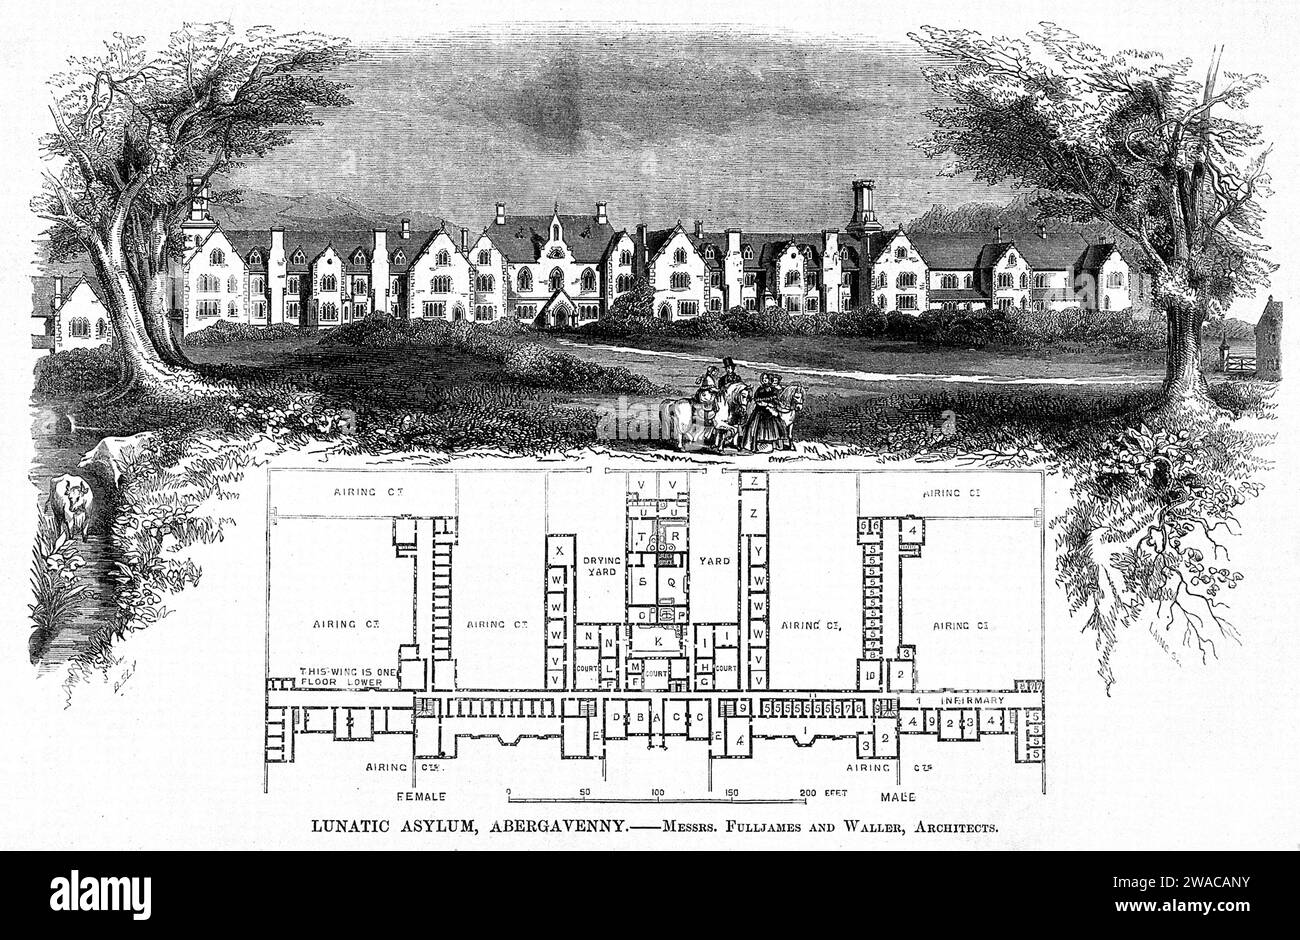 Plan et dessin de l'asile lunatique, Abergavenny, pays de Galles, Royaume-Uni, publié dans The Builder, un magazine hebdomadaire, 1851, The Builder Banque D'Images